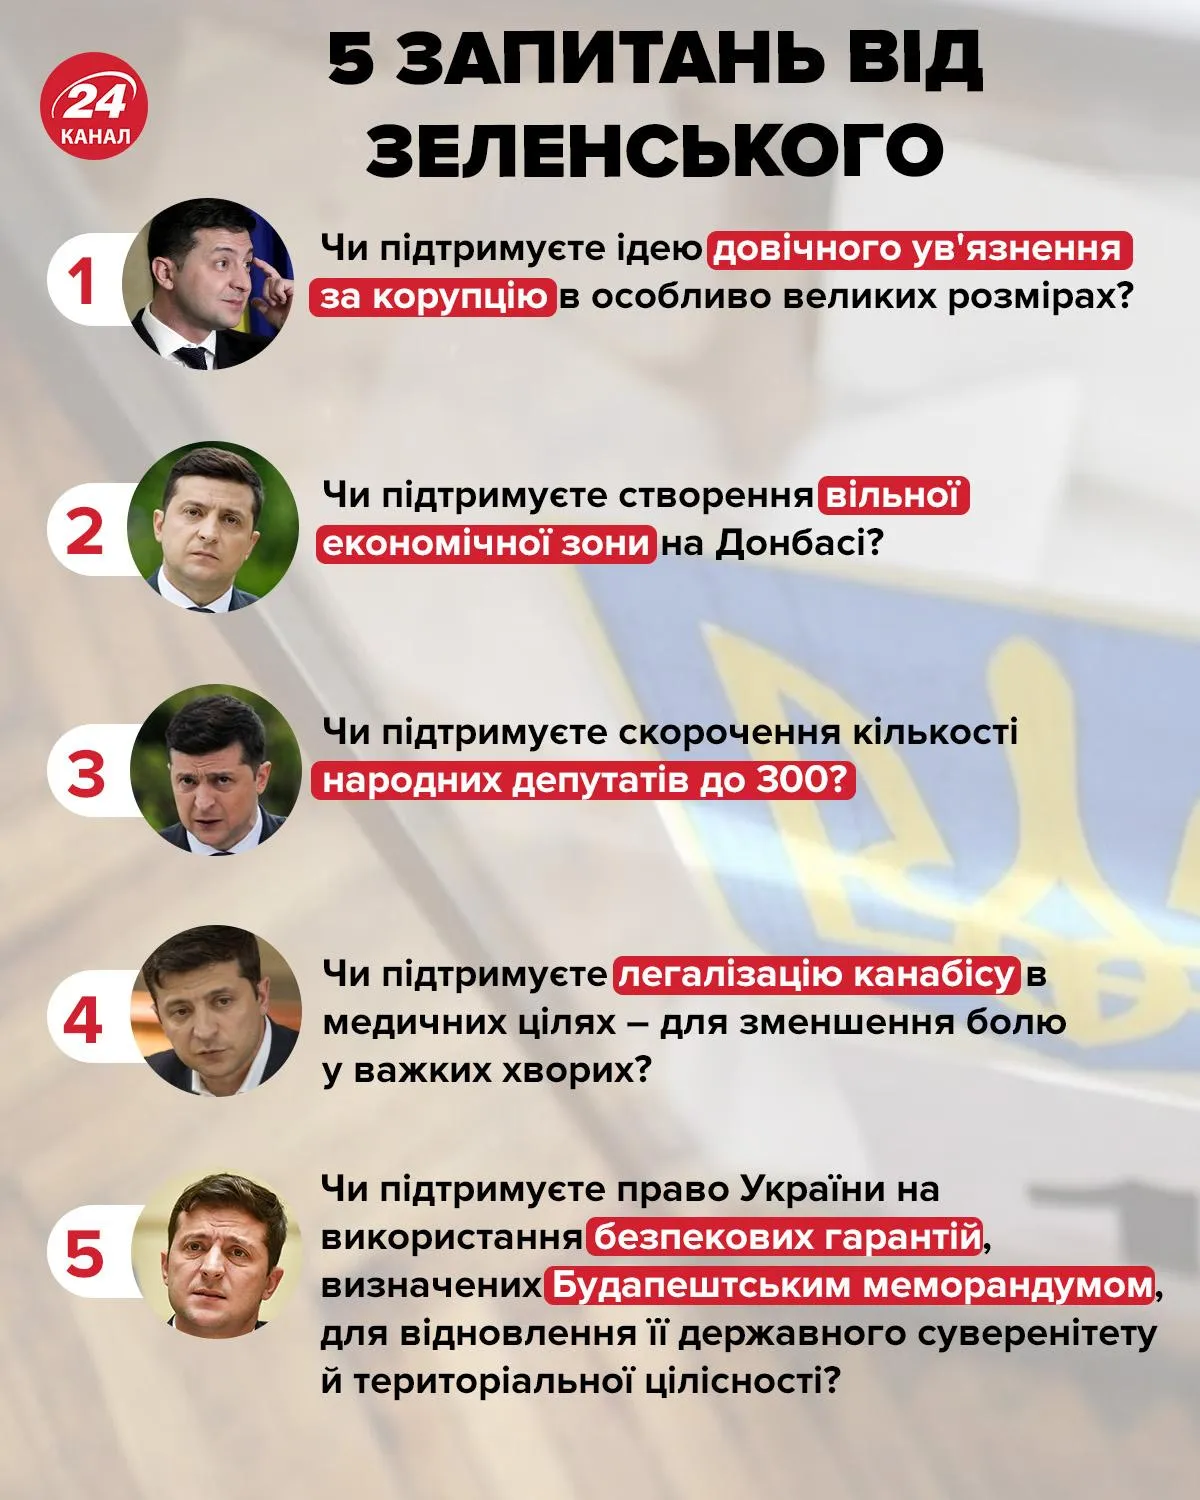 Всеукраїнське опитування 25 жовтня 